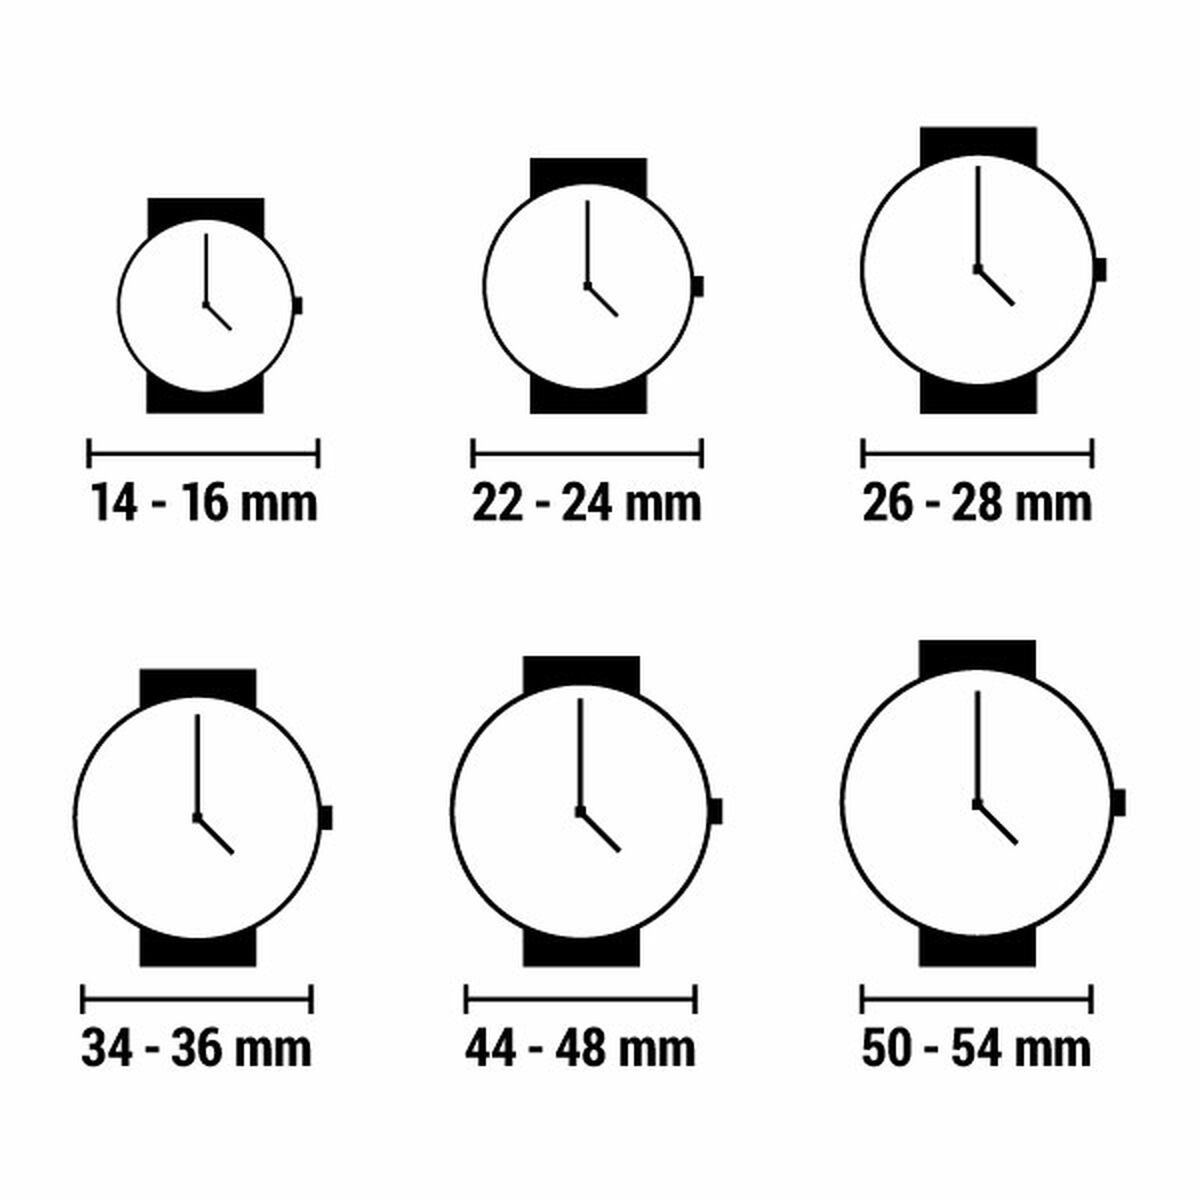 Horloge Dames Viceroy 42426-73 (Ø 32 mm)